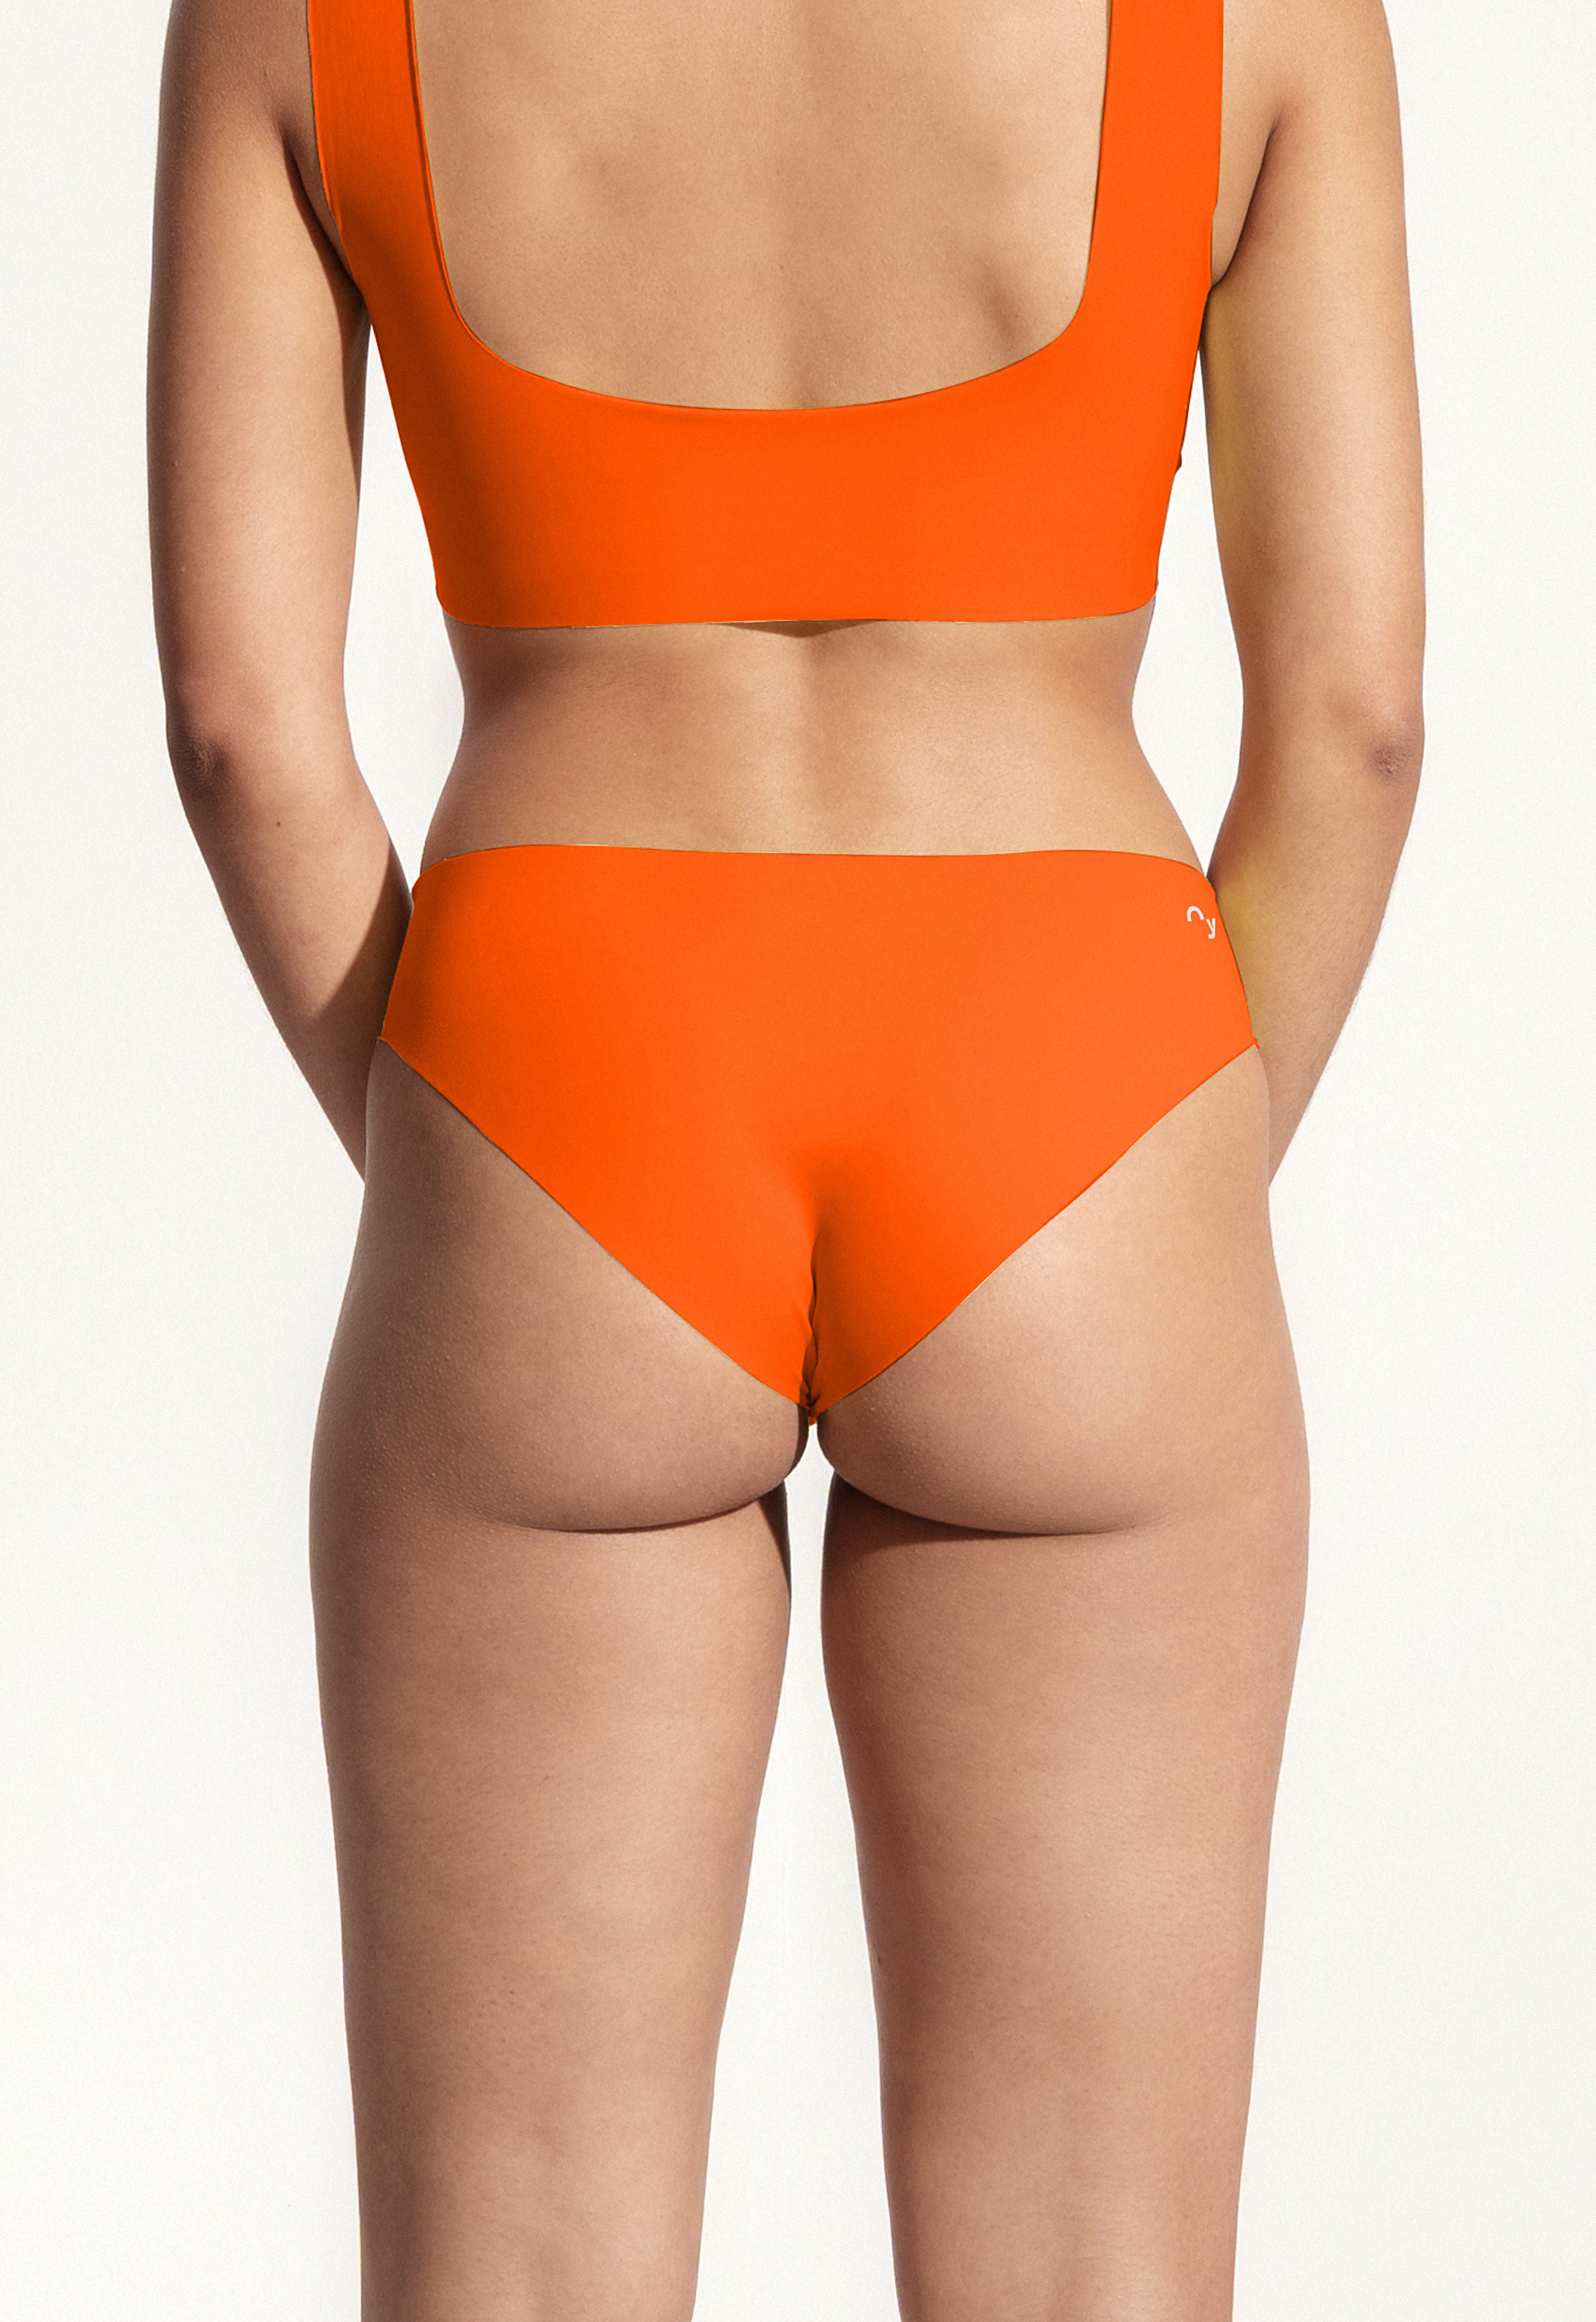 Oy_UWW_Under-Wetsuit-Wear_Hipster_orange_1.jpg